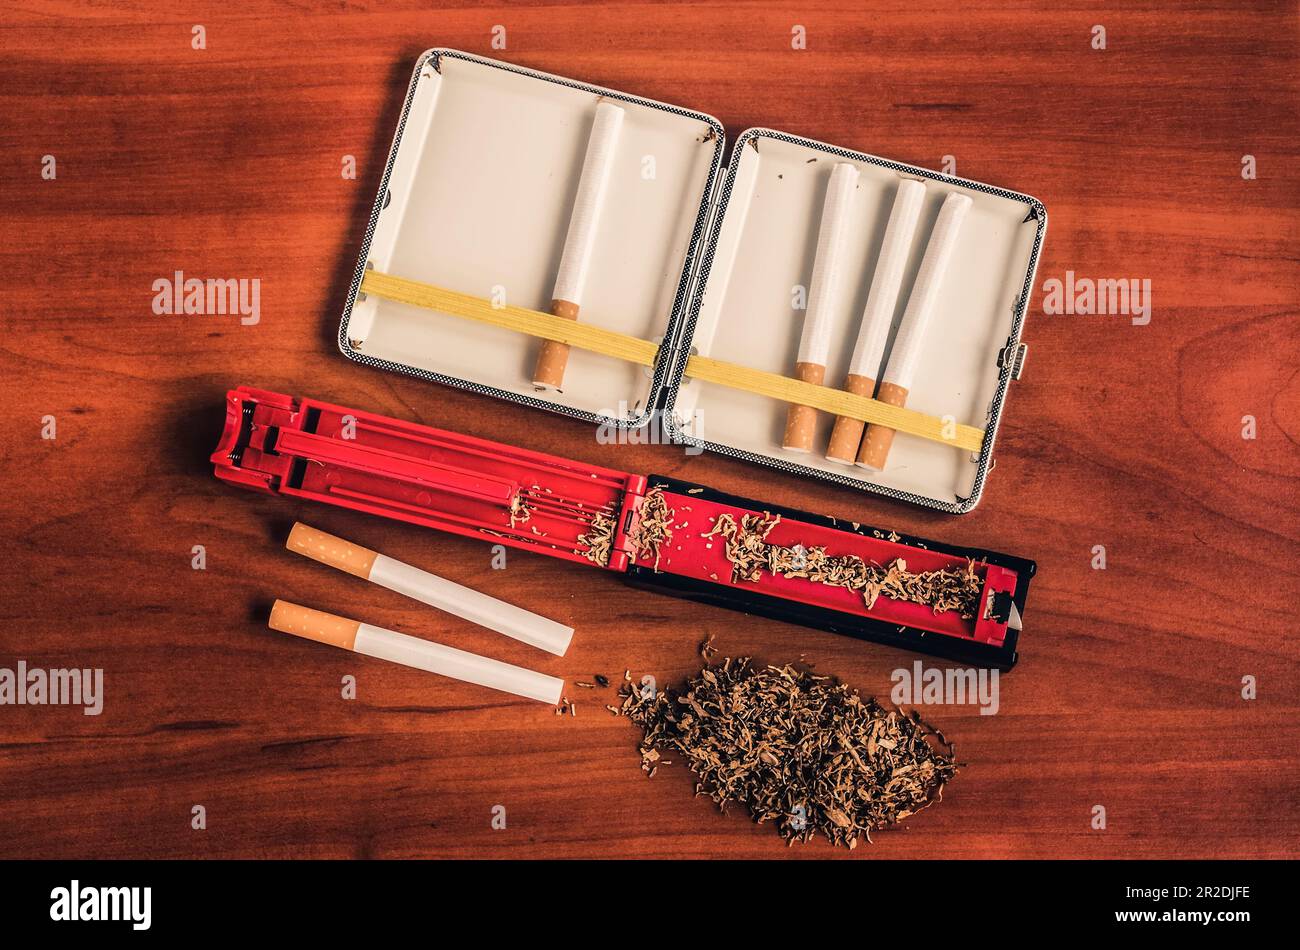 Cigarettes Avec Un Filtre Brun Image stock - Image du lame, toxique:  31851085